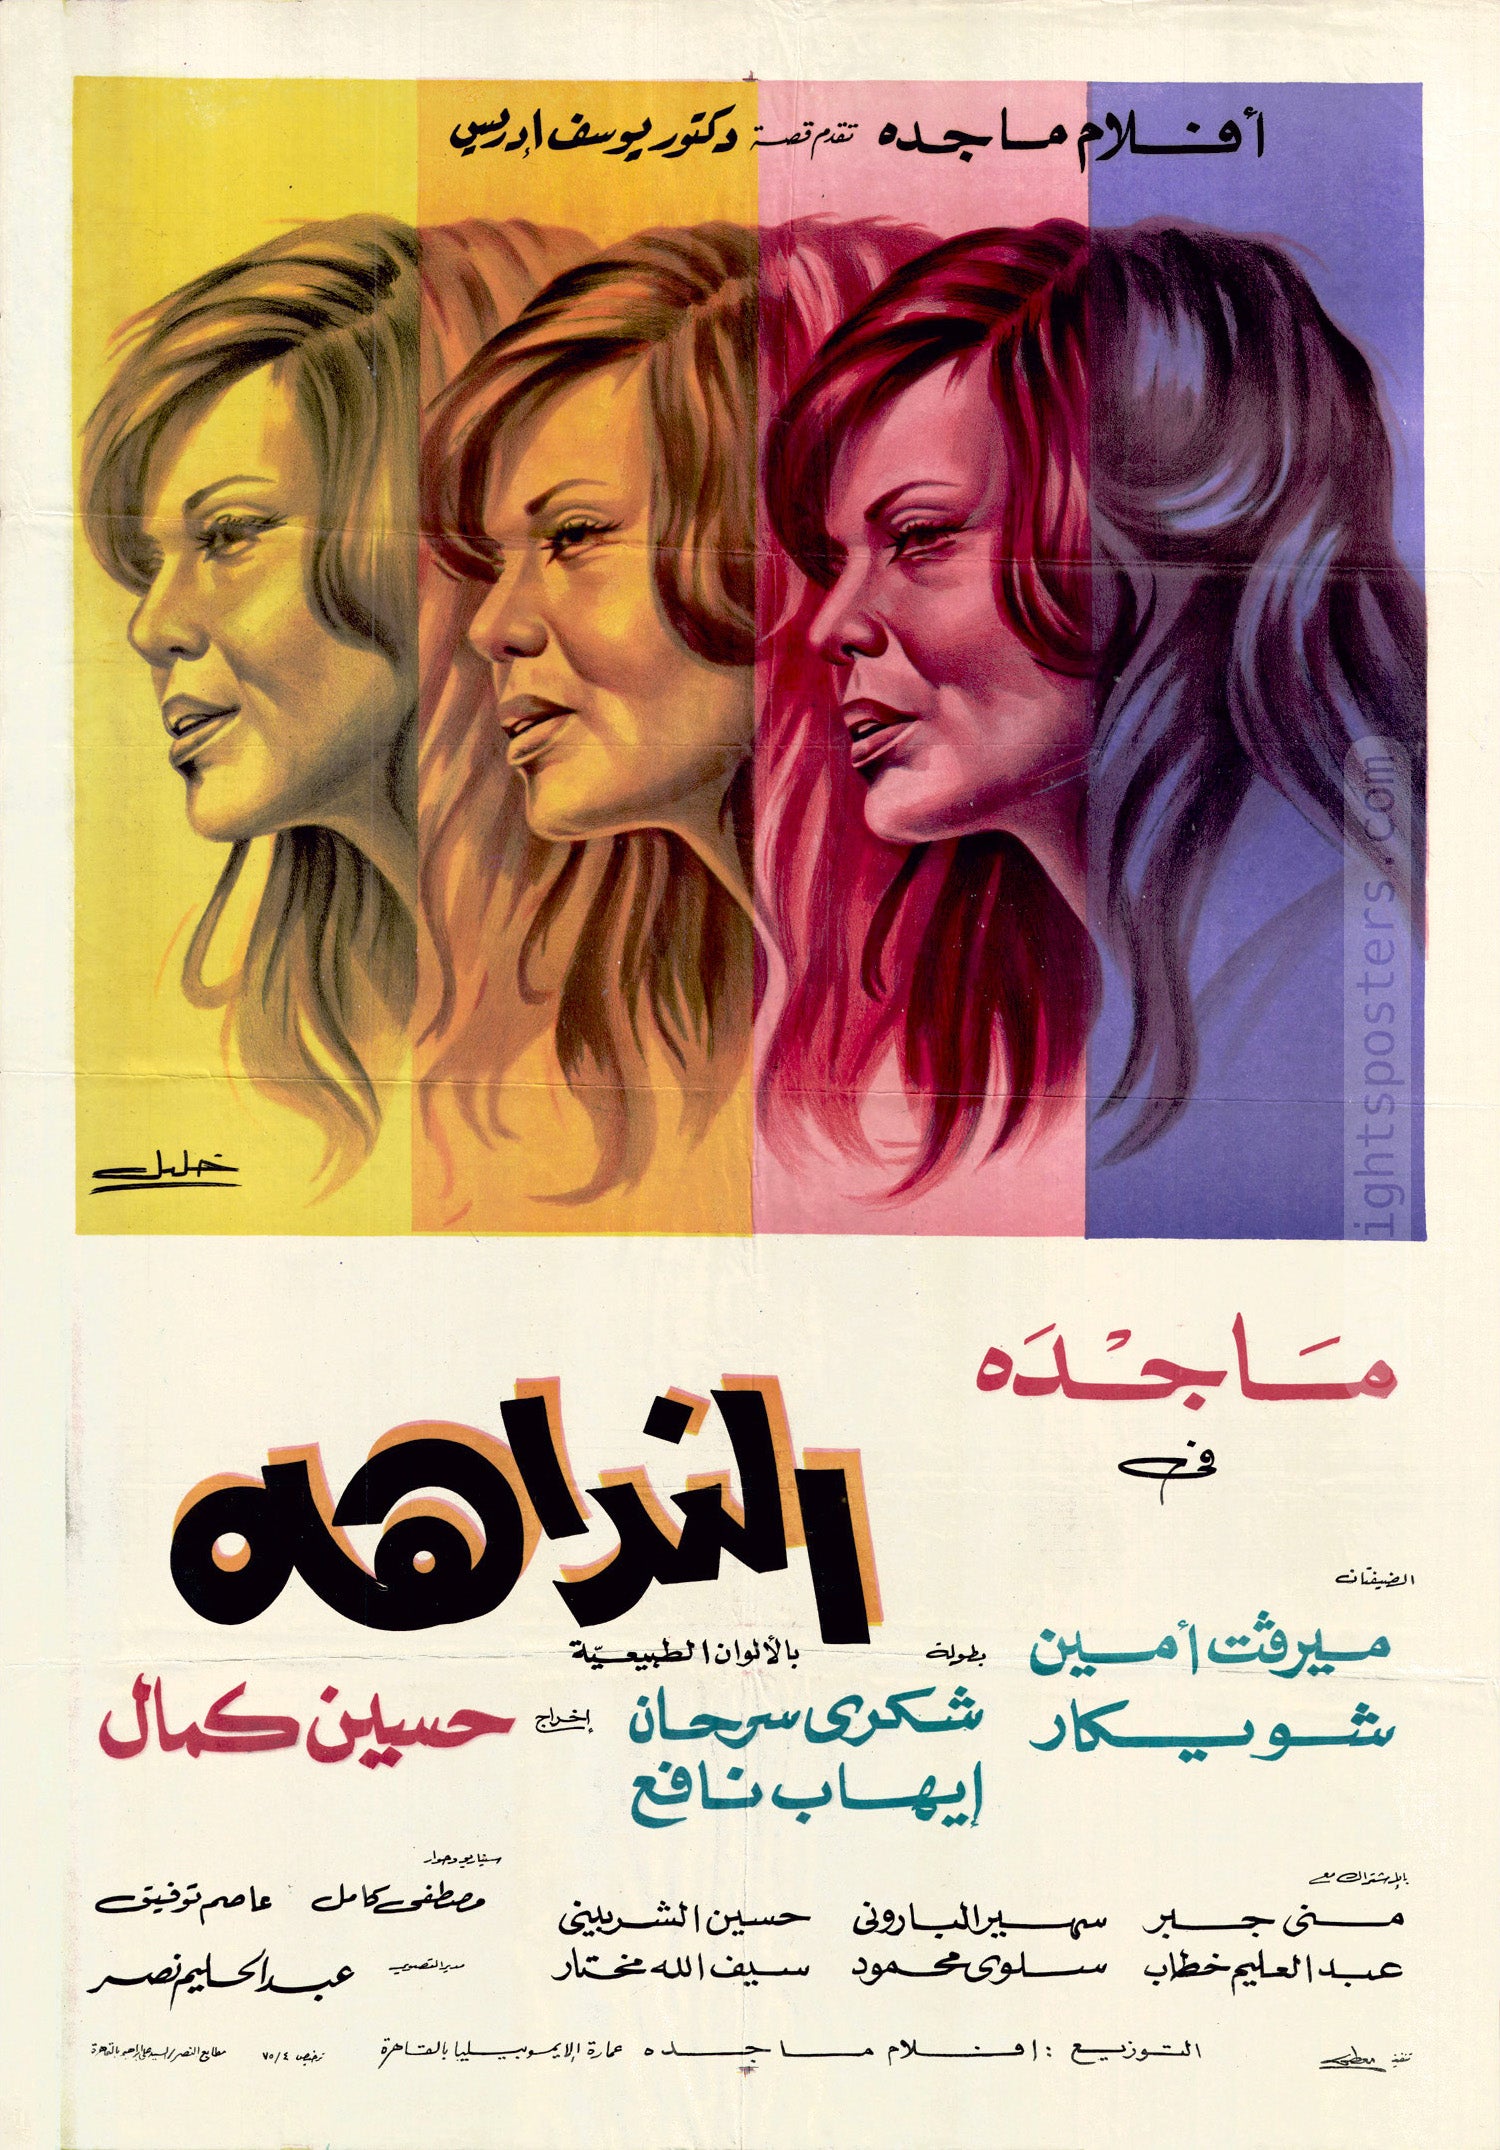 ملصق فيلم «النداهة» (1975)، 70 * 100 سم. تصميم خليل.